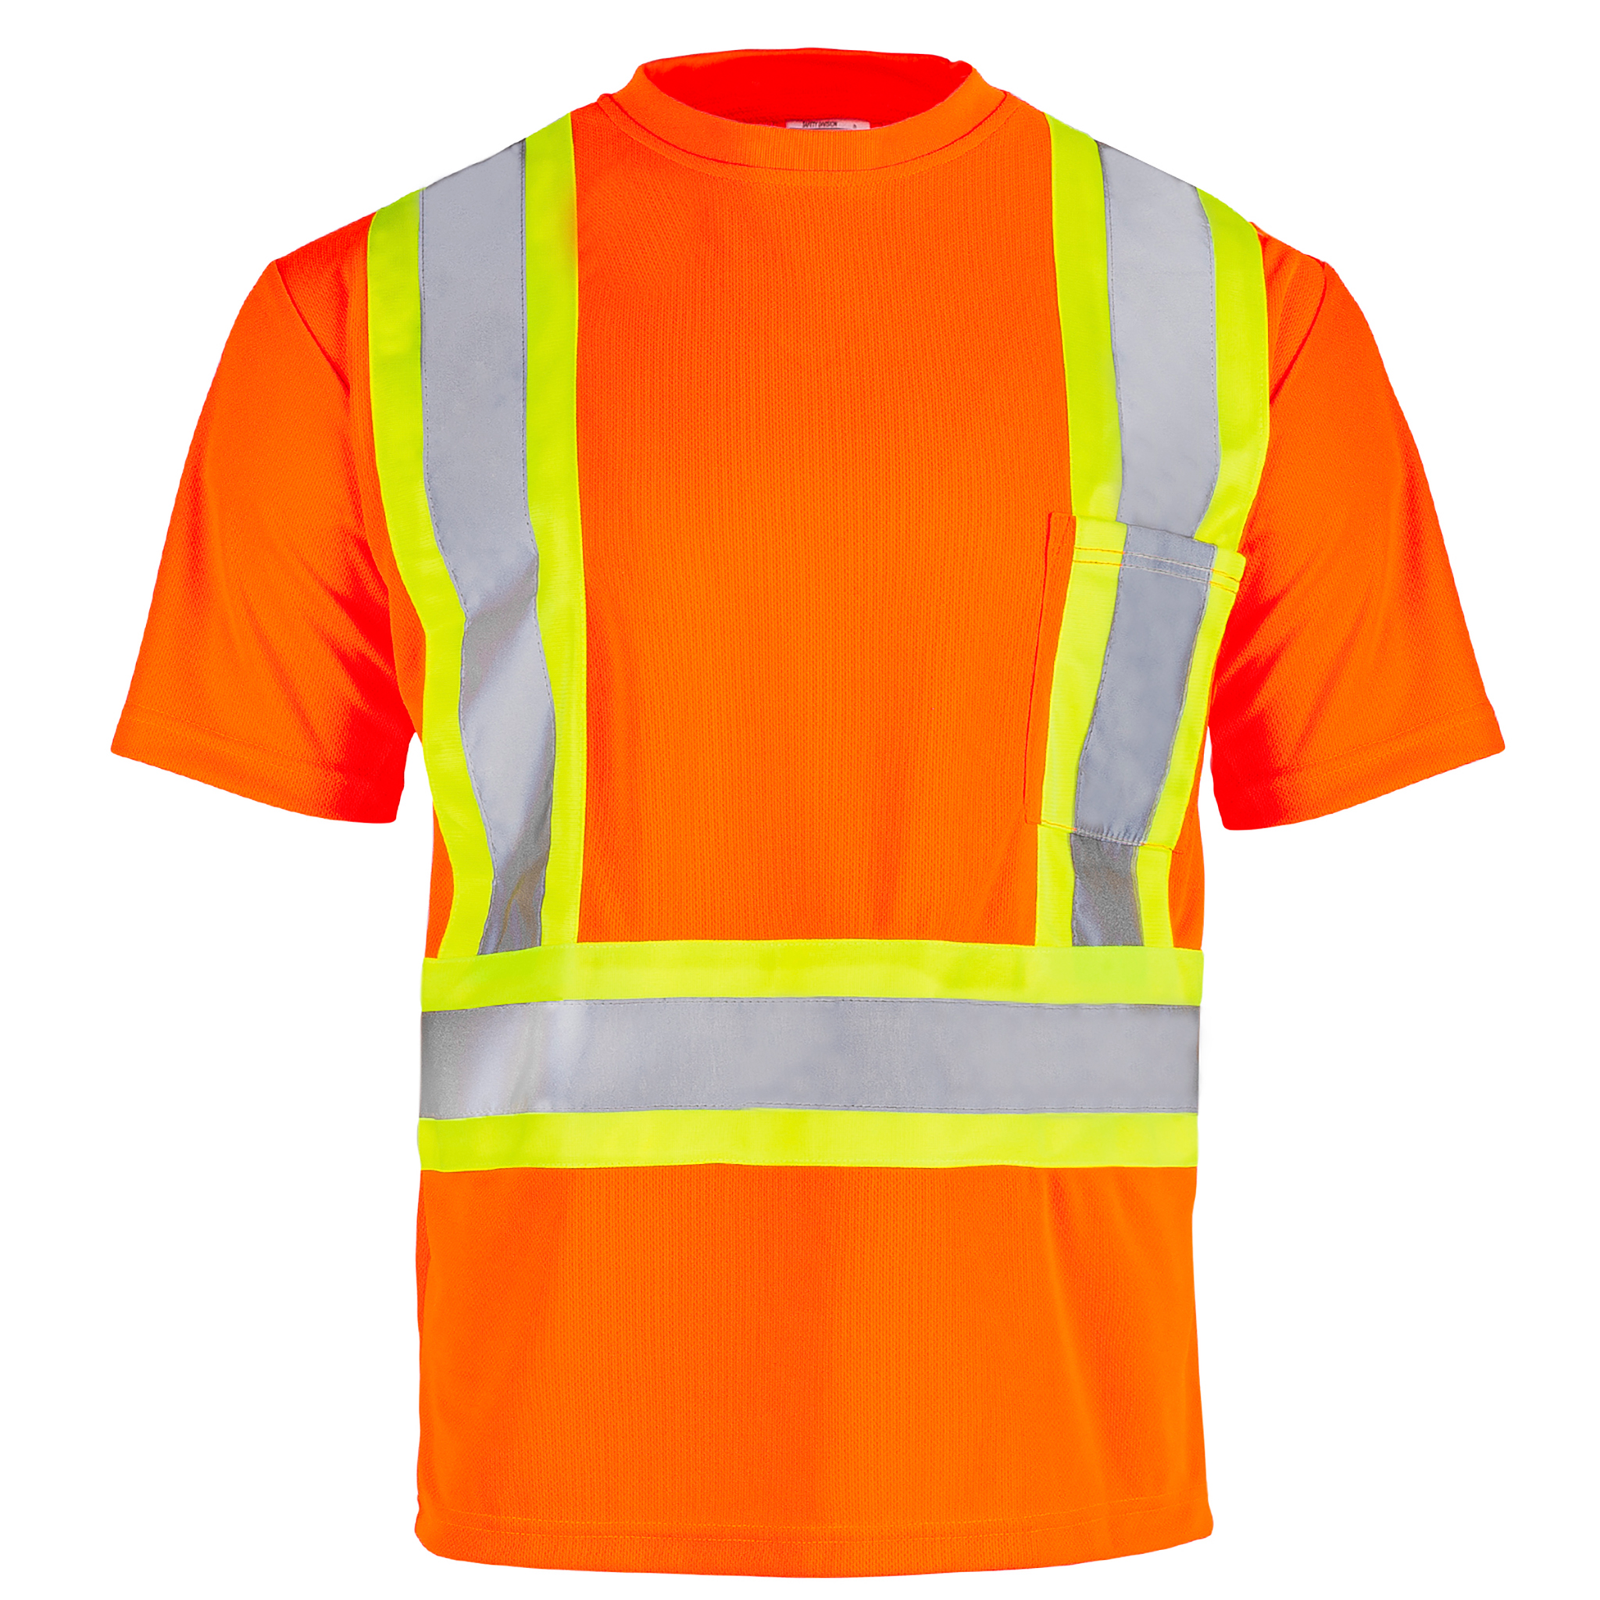 Short sleeve orange reflective shirt